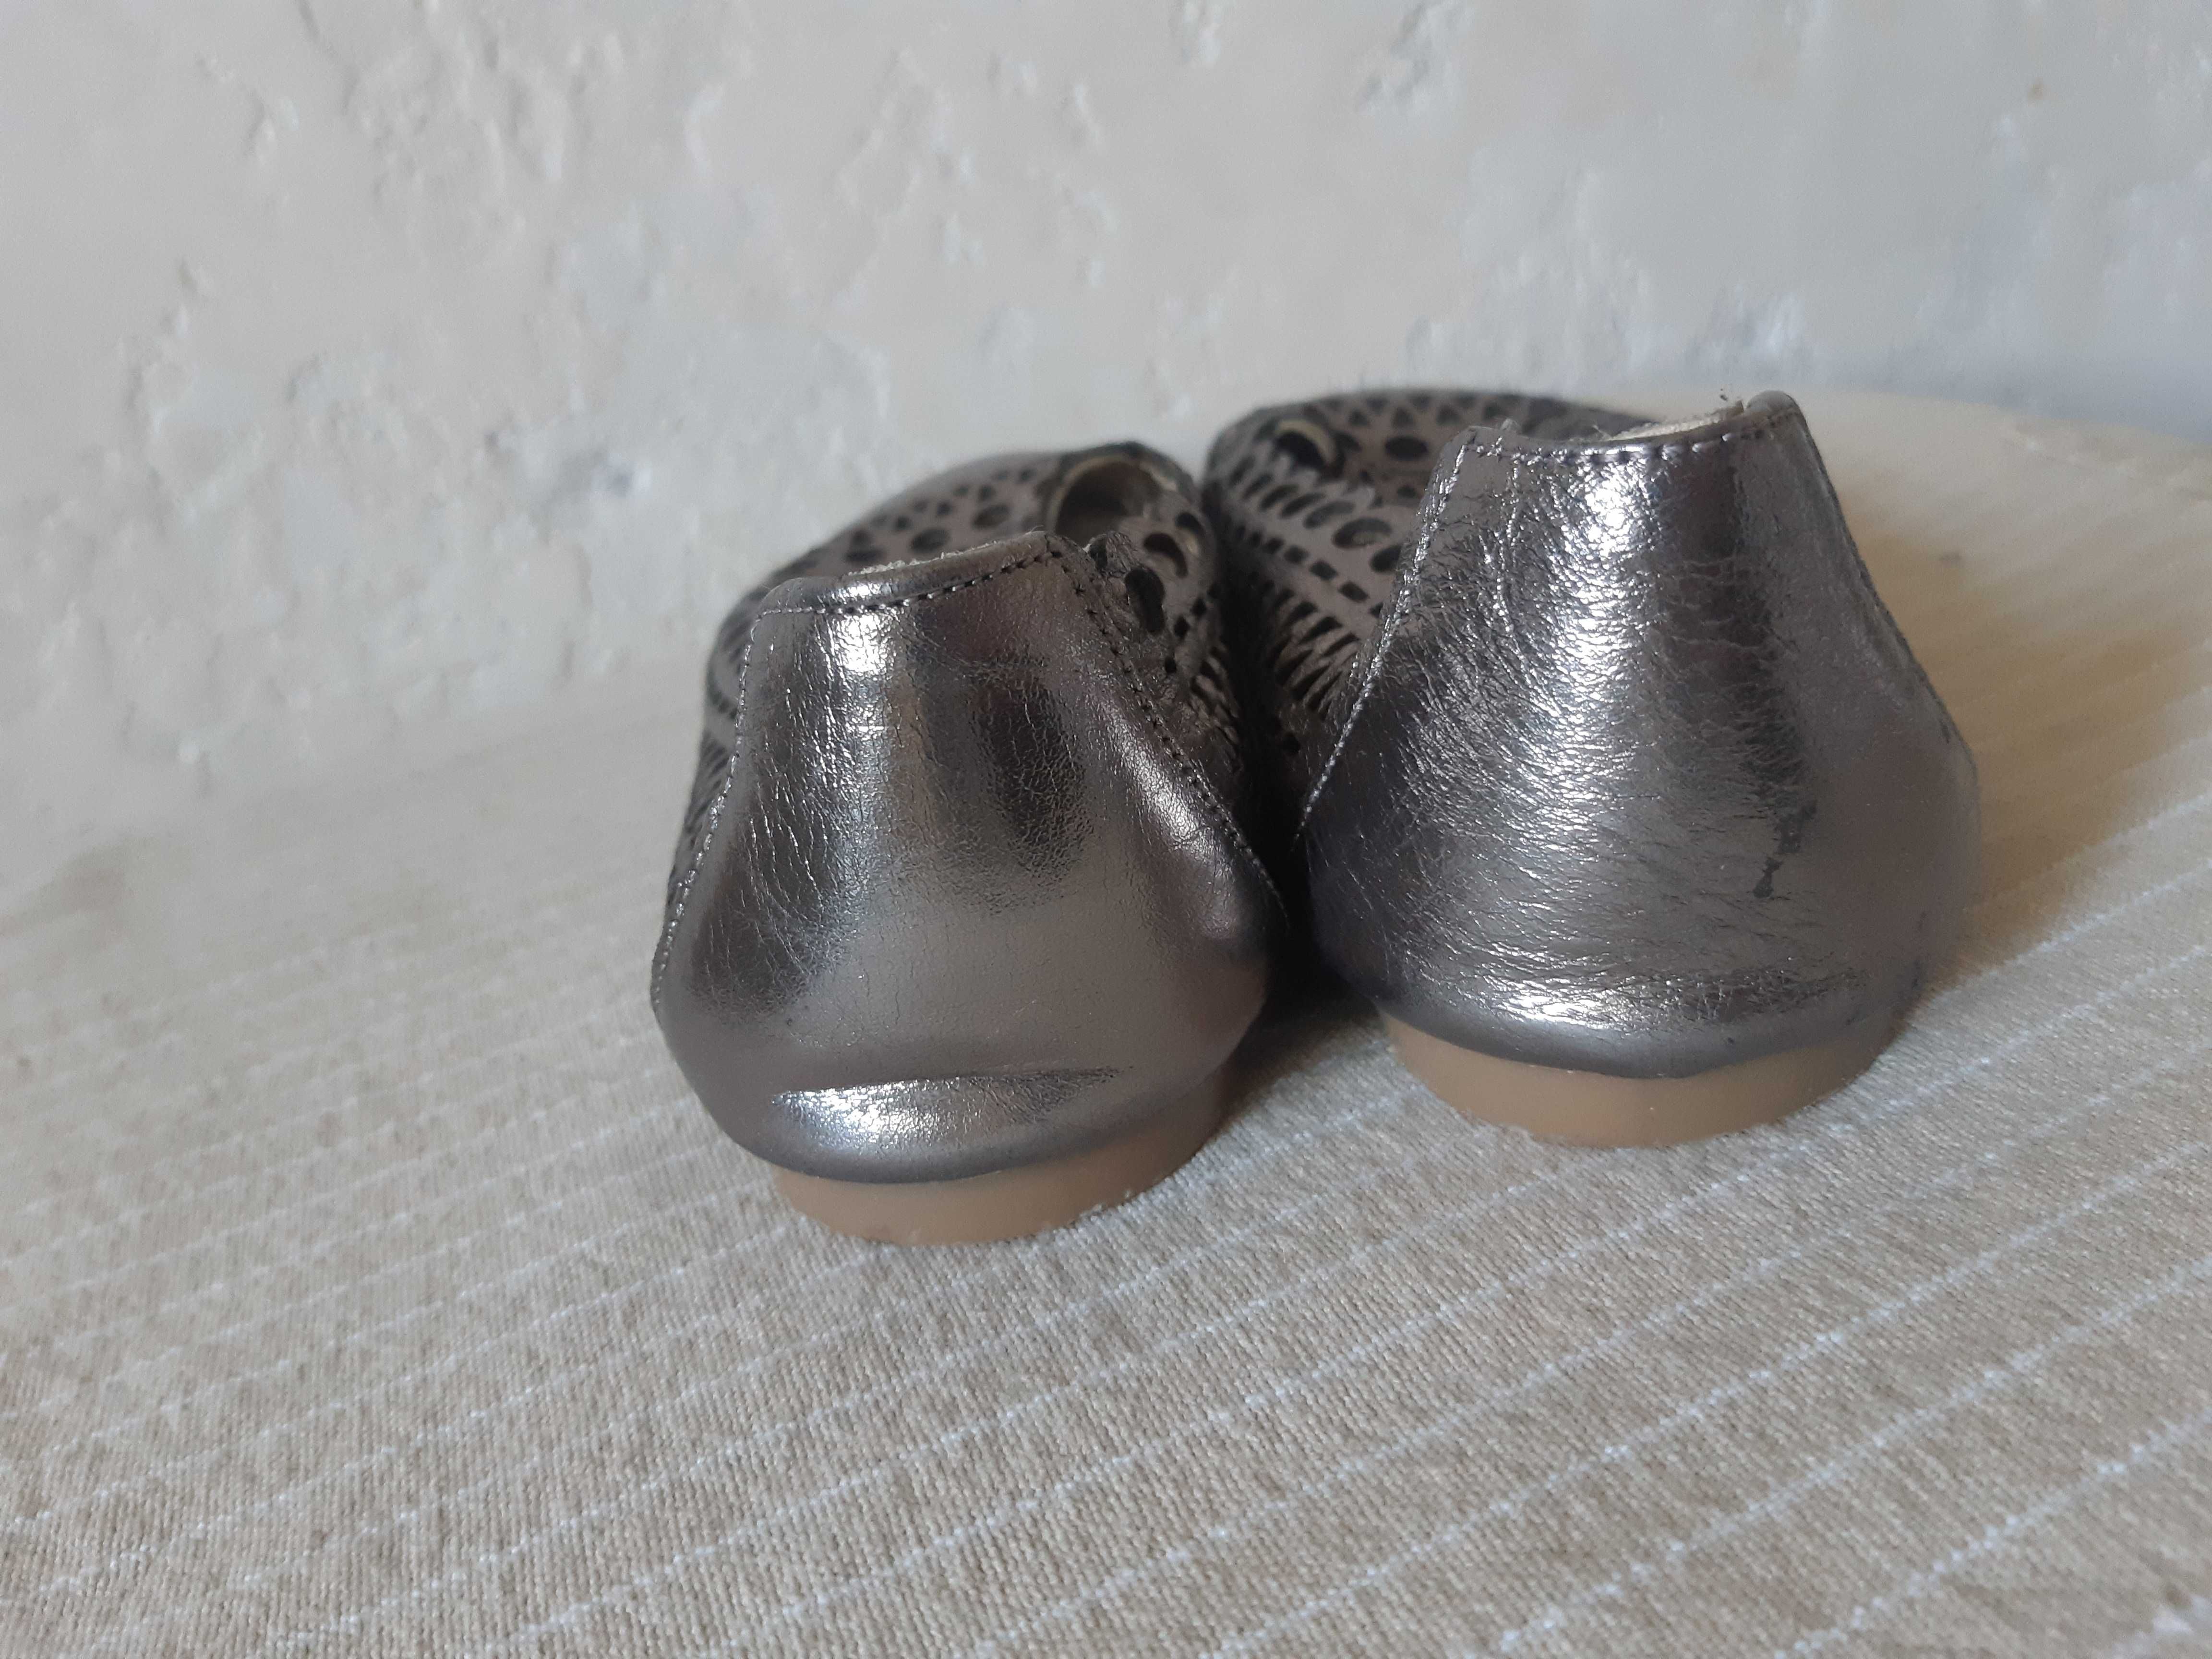 Балетки женские р.37 летняя обувь